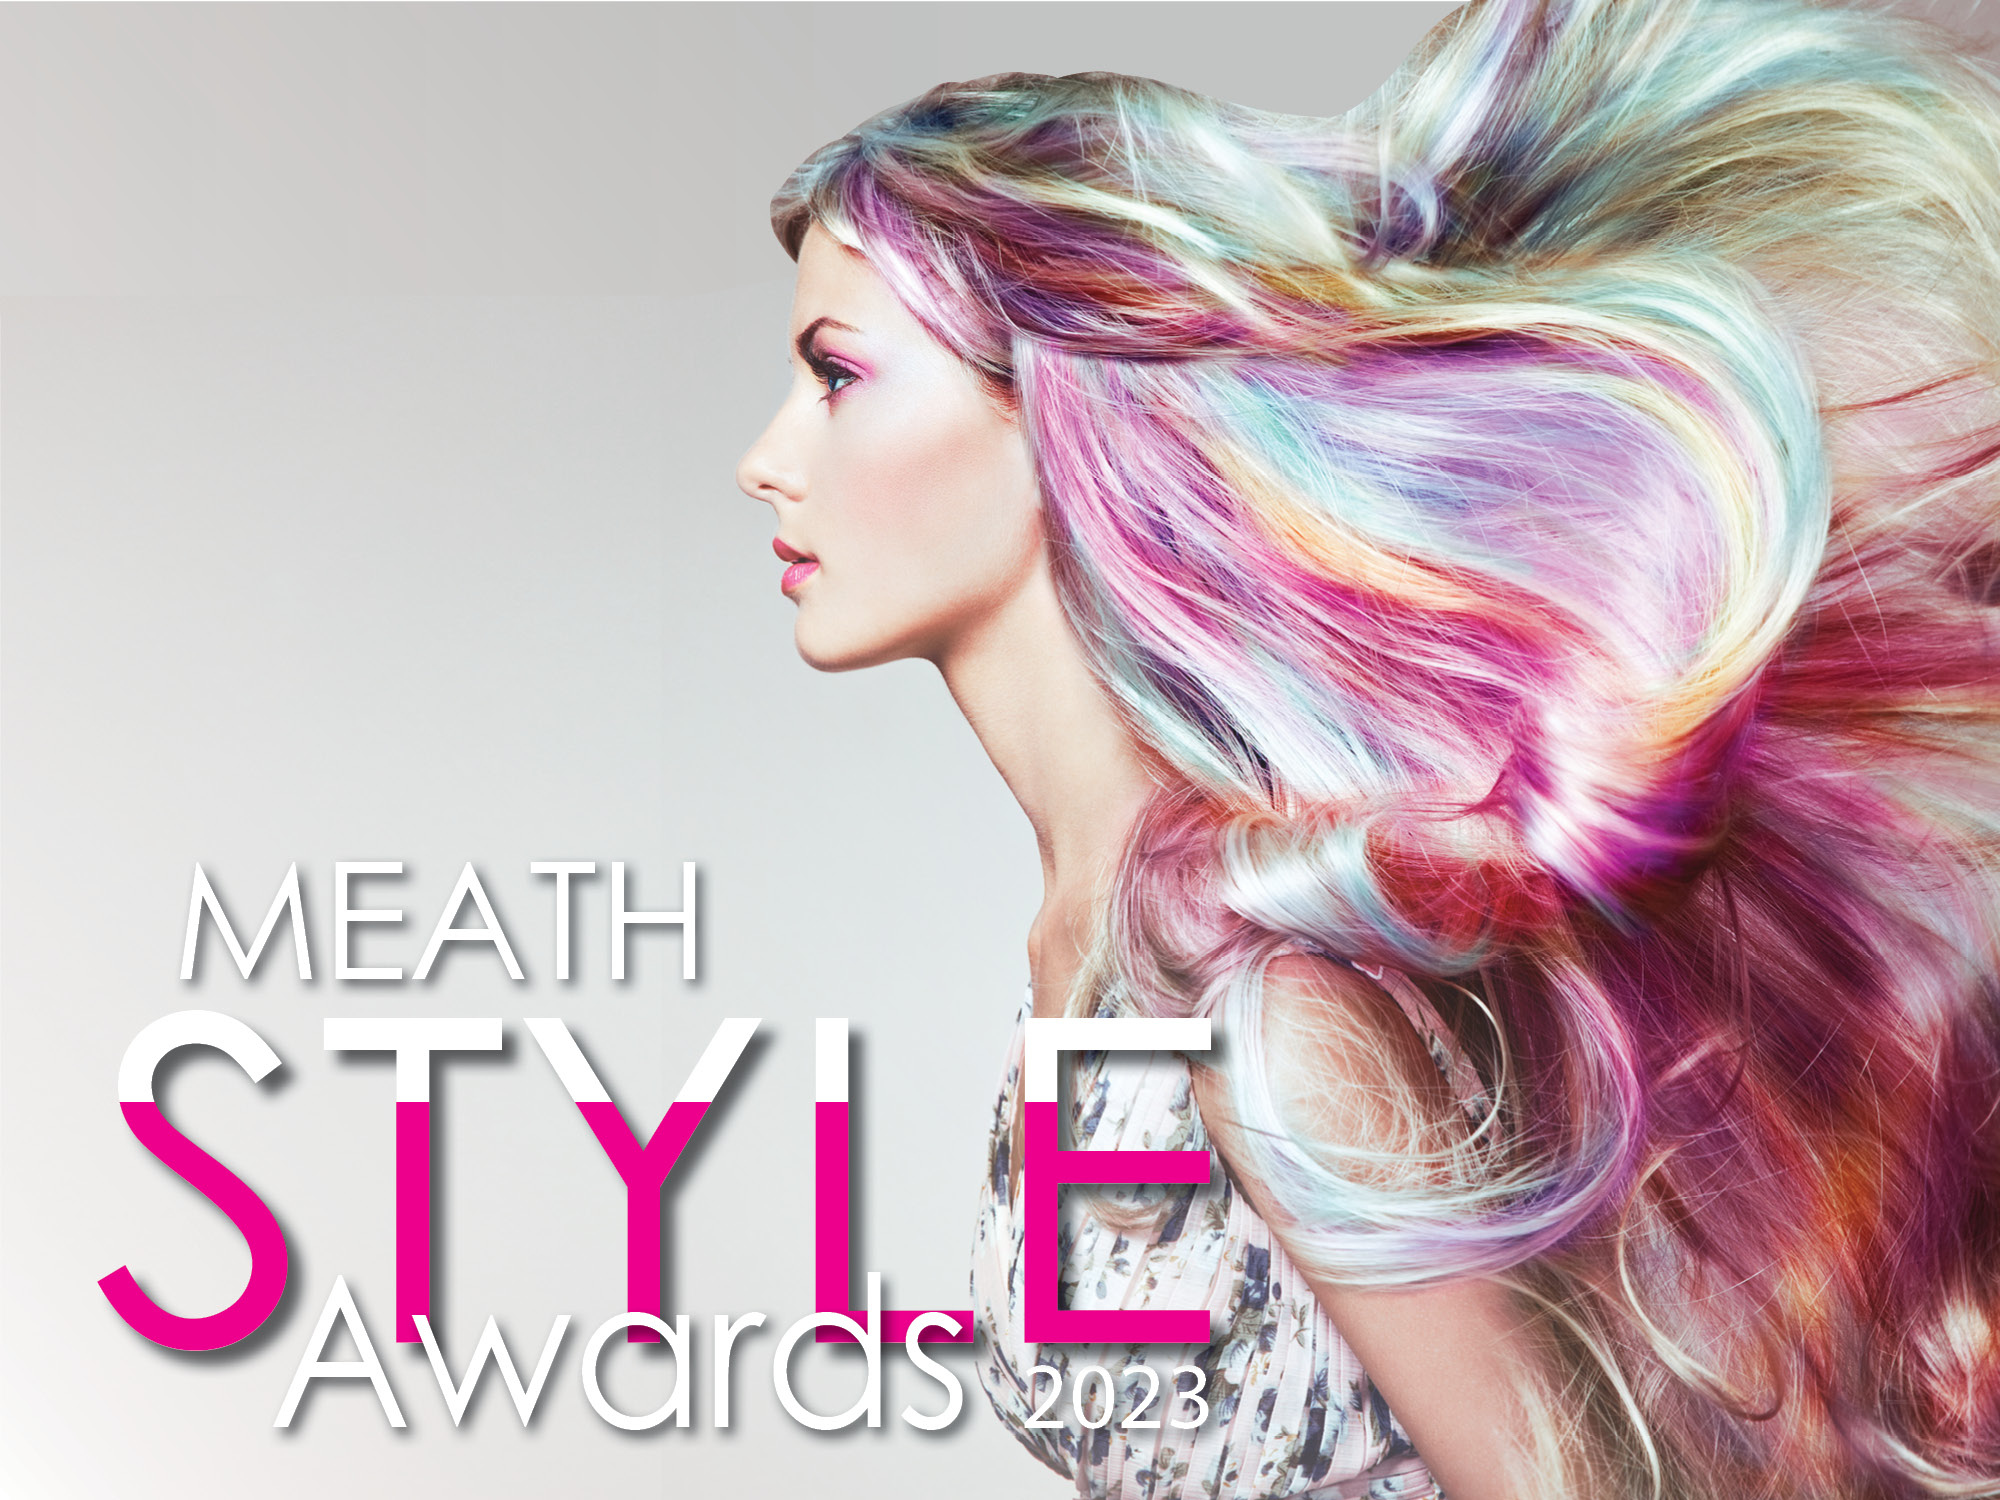 meath style awards 2023 logo3